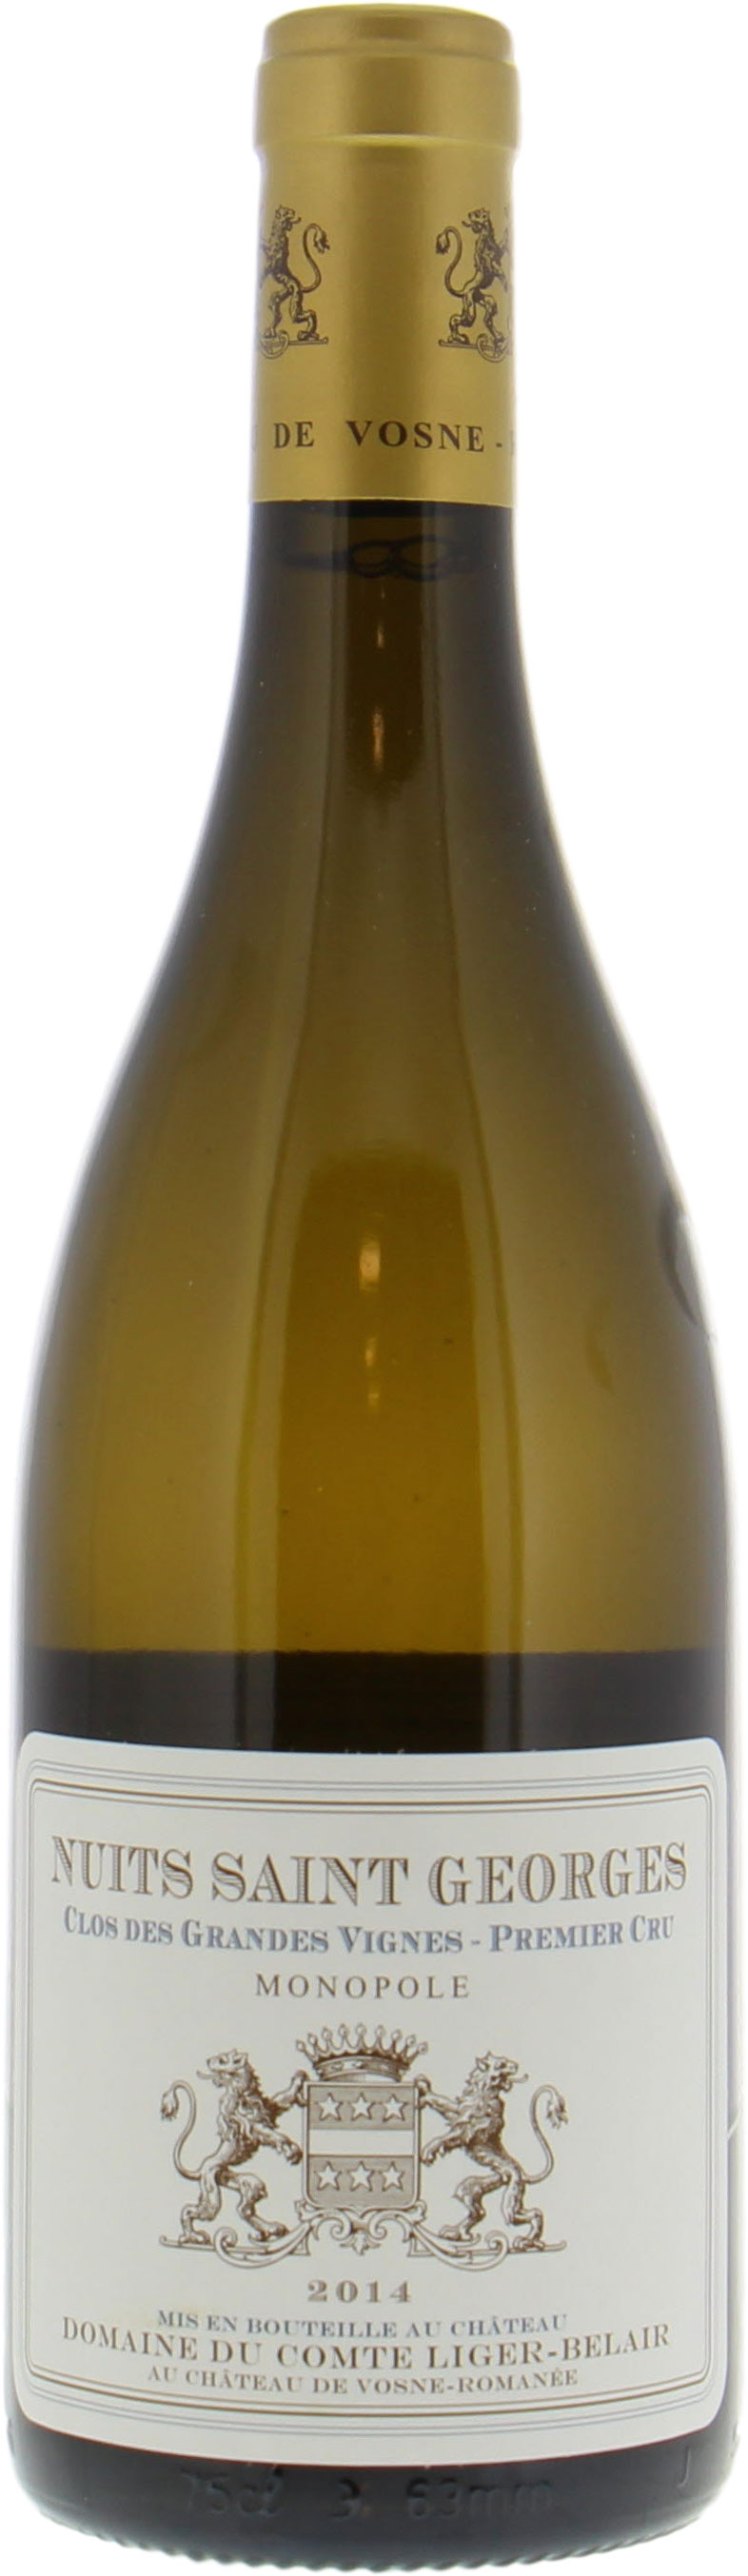 Domaine du Comte Liger-Belair - Nuits St Georges Clos Grandes Vignes Blanc 2014 Perfect